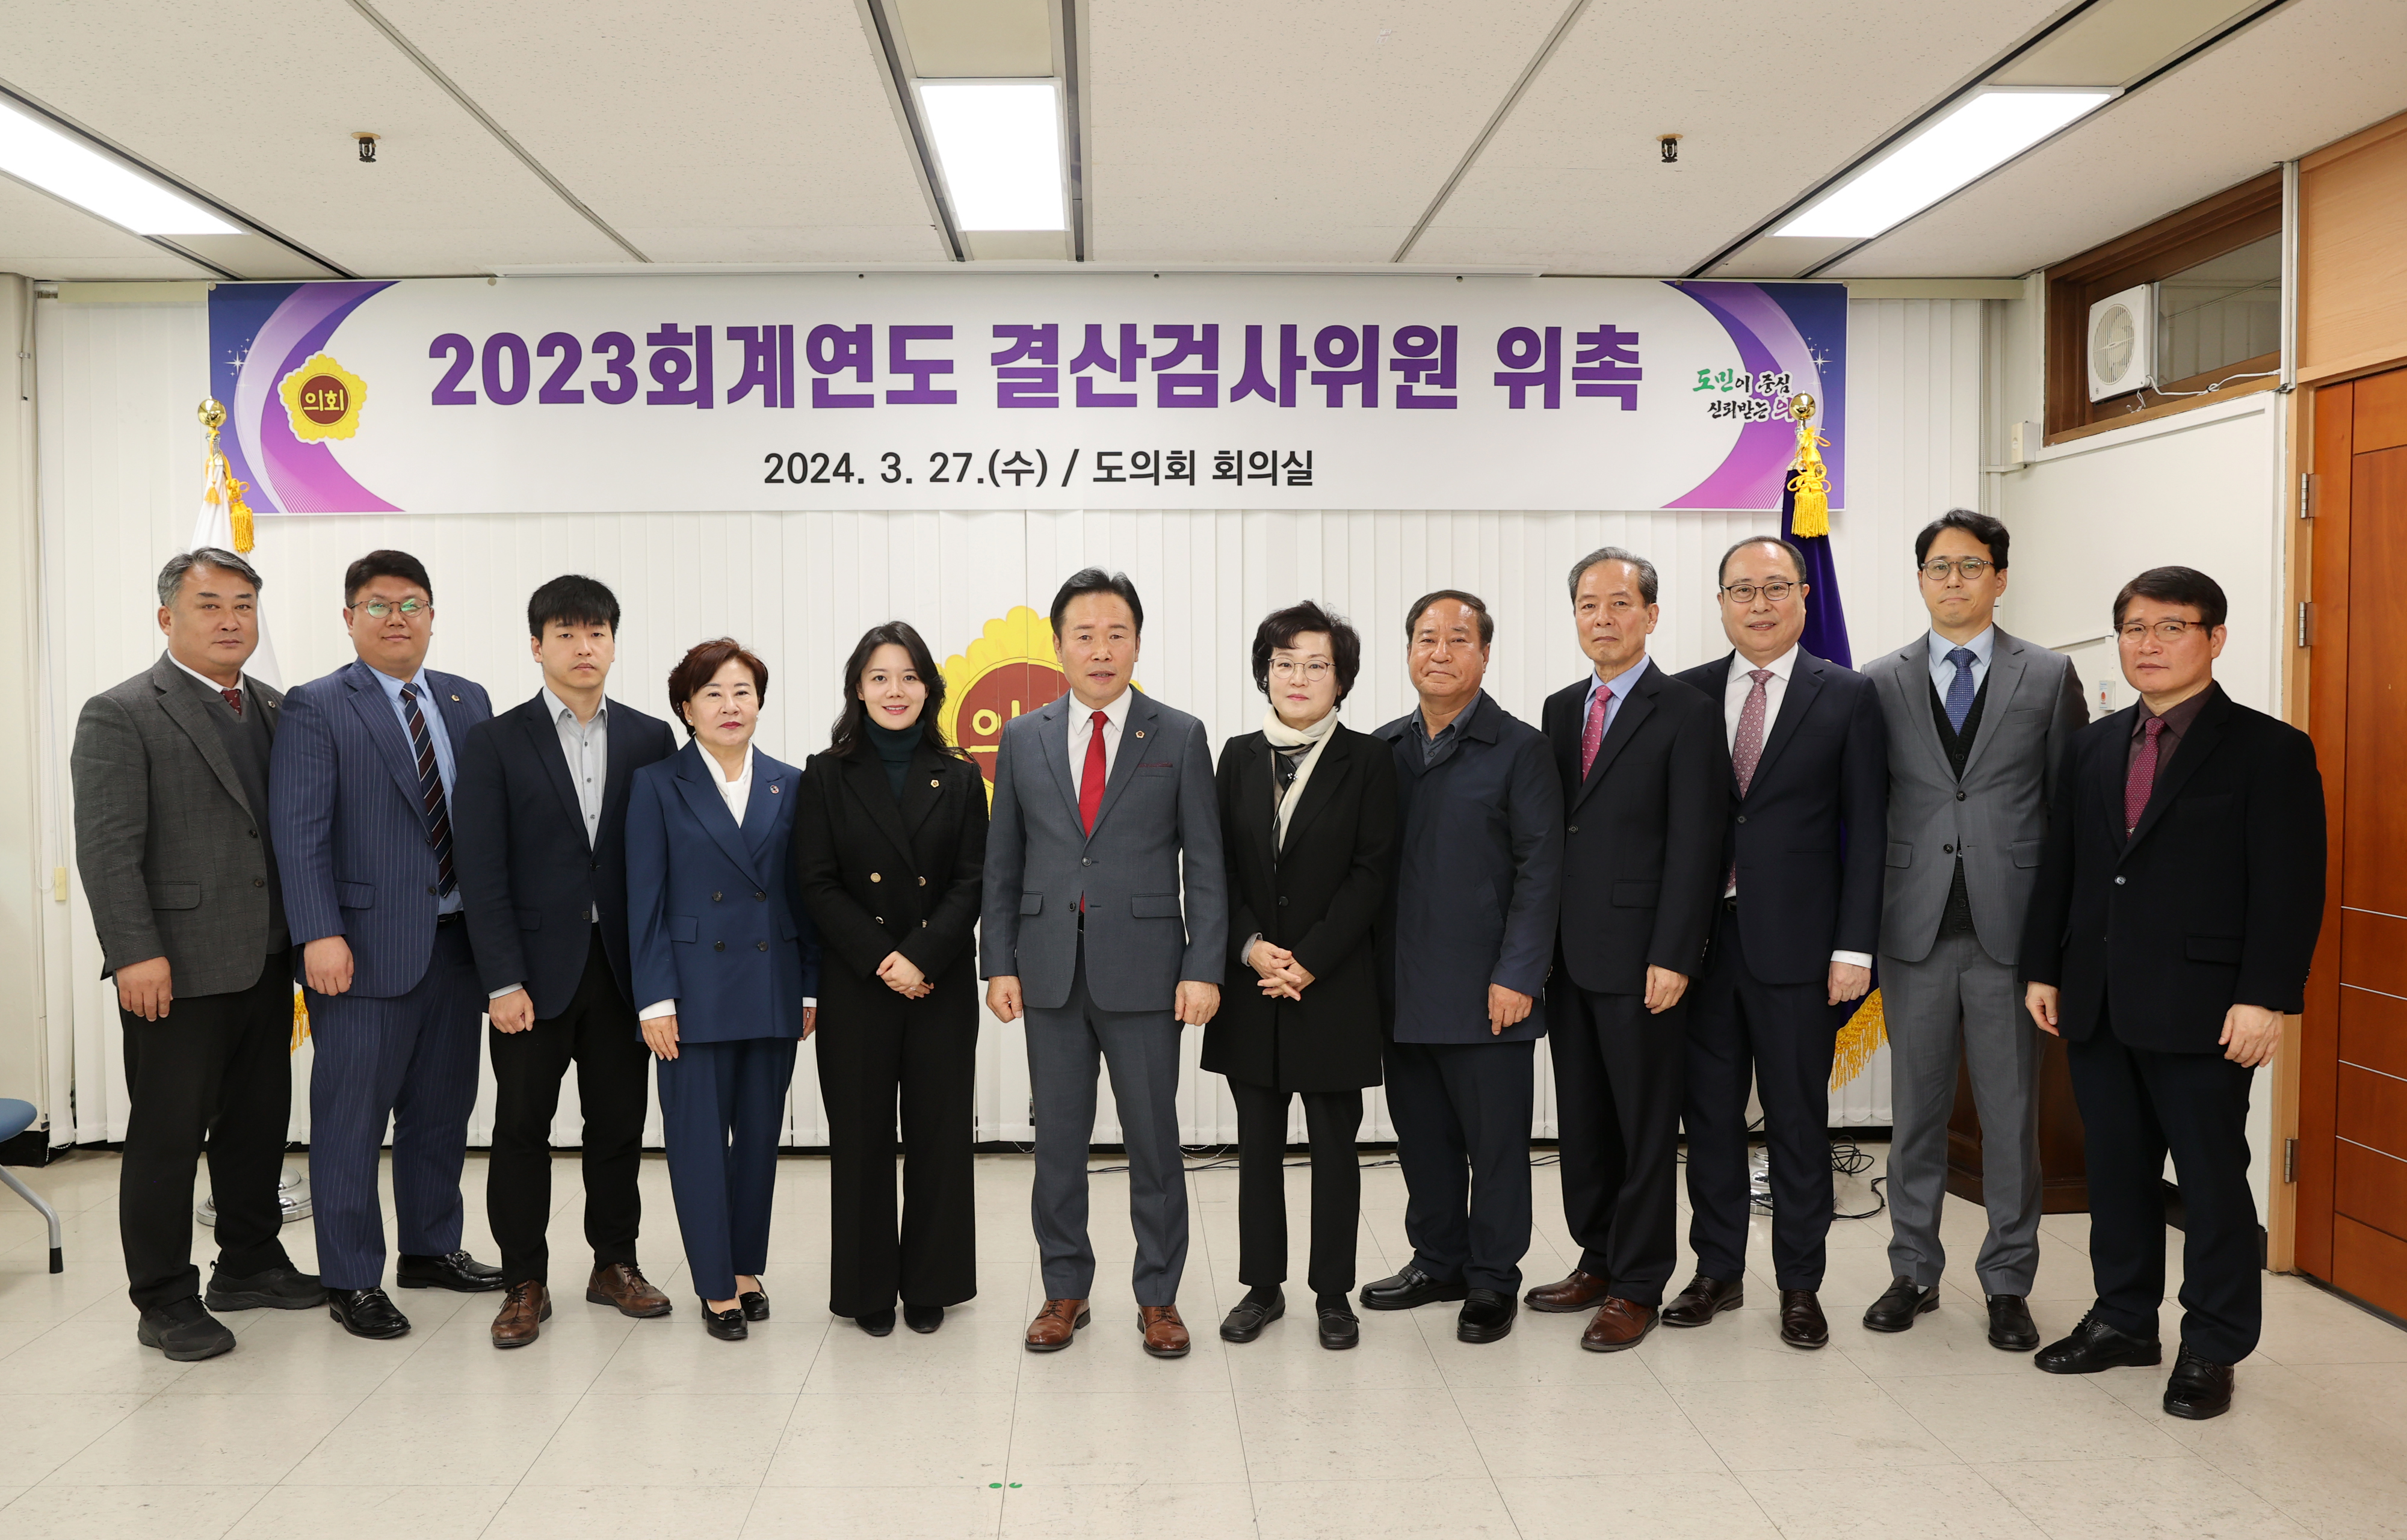 박재주 의원, 2023회계연도 결산검사 위원 위촉 - 1